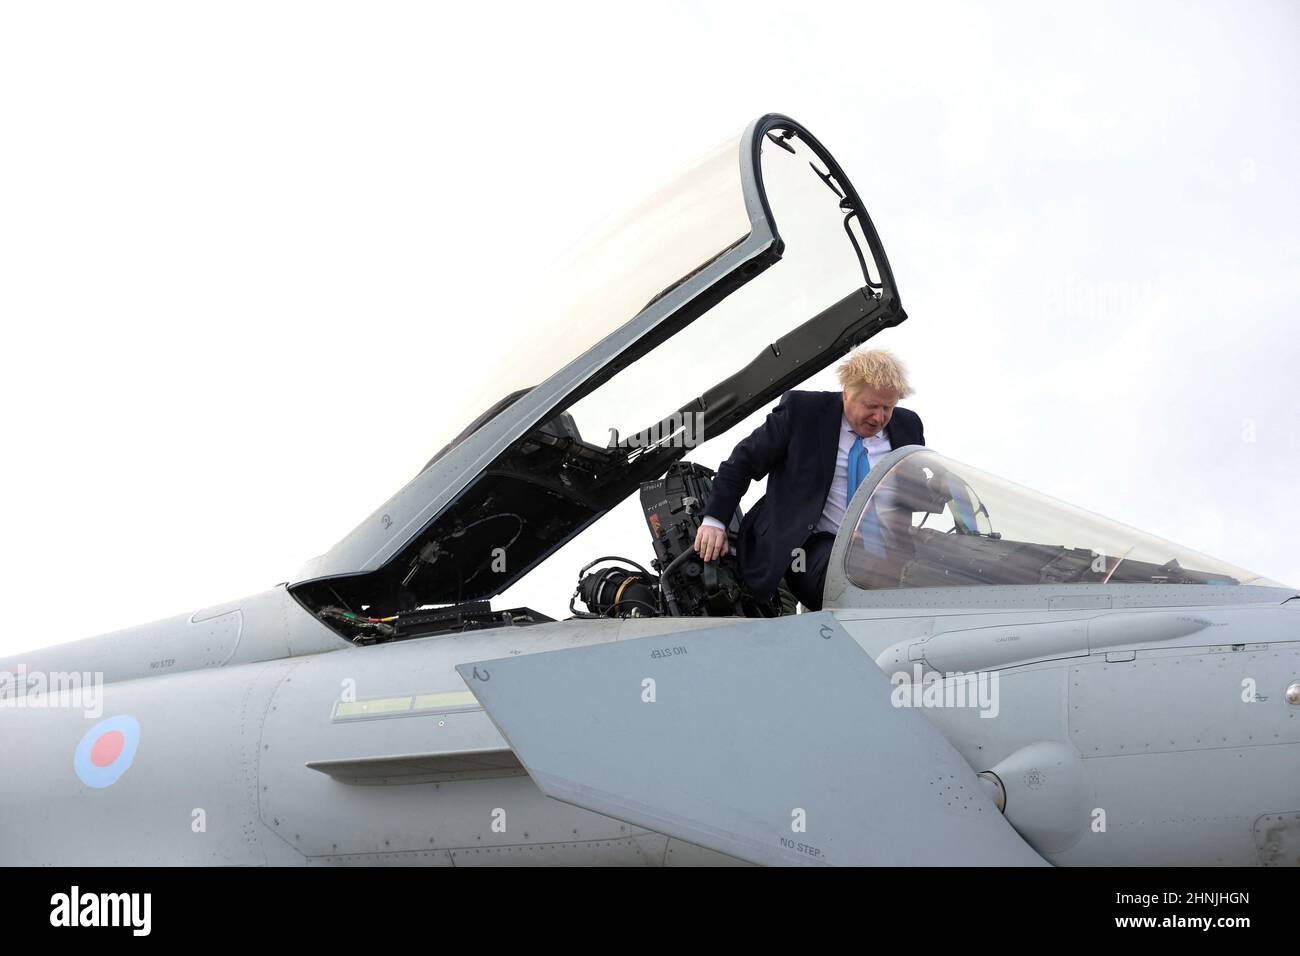 Il primo Ministro Boris Johnson sale in un aereo militare durante la sua visita alla Royal Air Force Station di Waddington nel Lincolnshire dove ha incontrato personale militare. Data immagine: Giovedì 17 febbraio 2022. Foto Stock